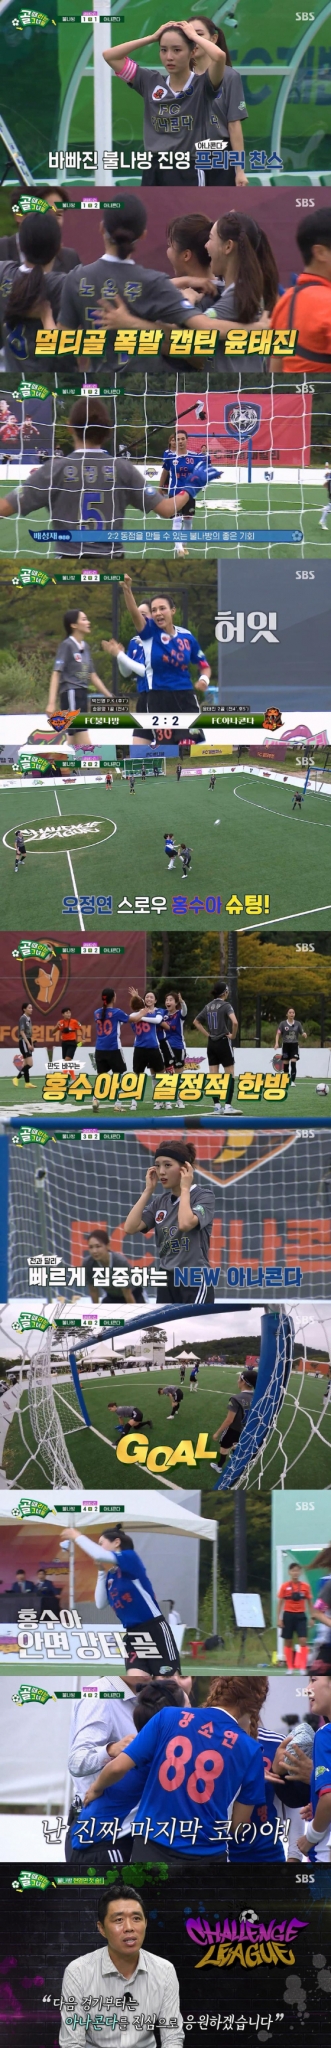 SBS '골 때리는 그녀들'에서 'FC불나방' 대 'FC아나콘다'의 경기가 펼쳐졌다./사진=SBS